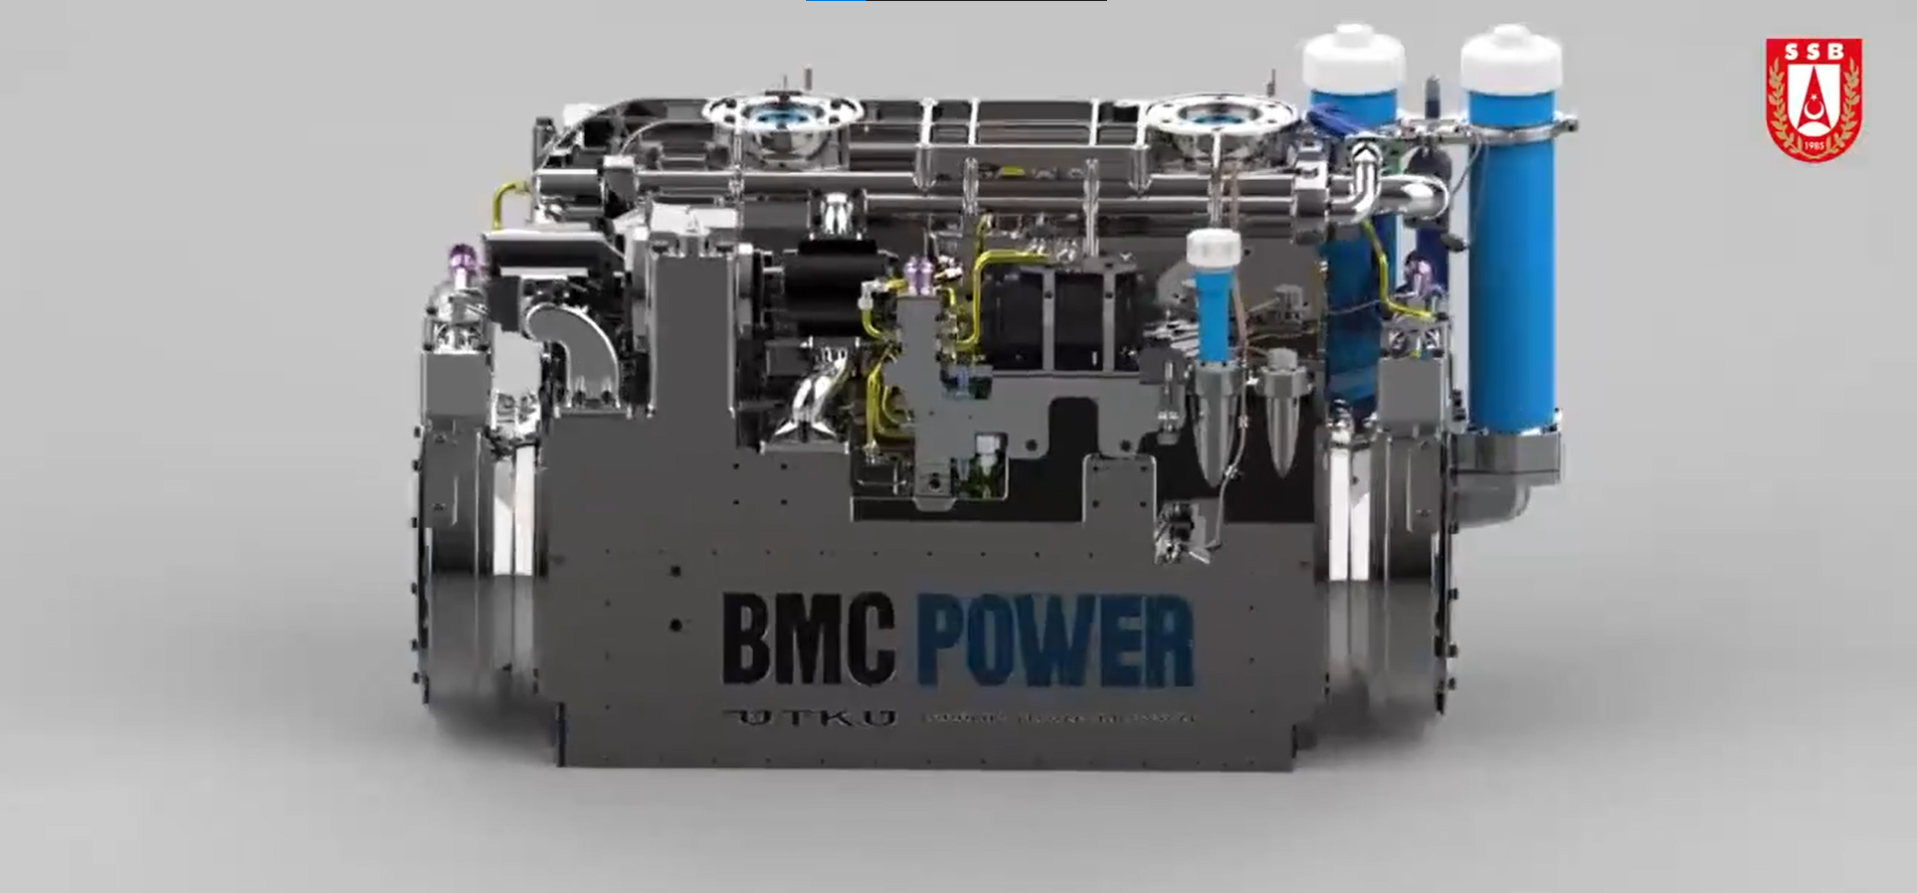 UTKU Güç Grubu/BMC Power